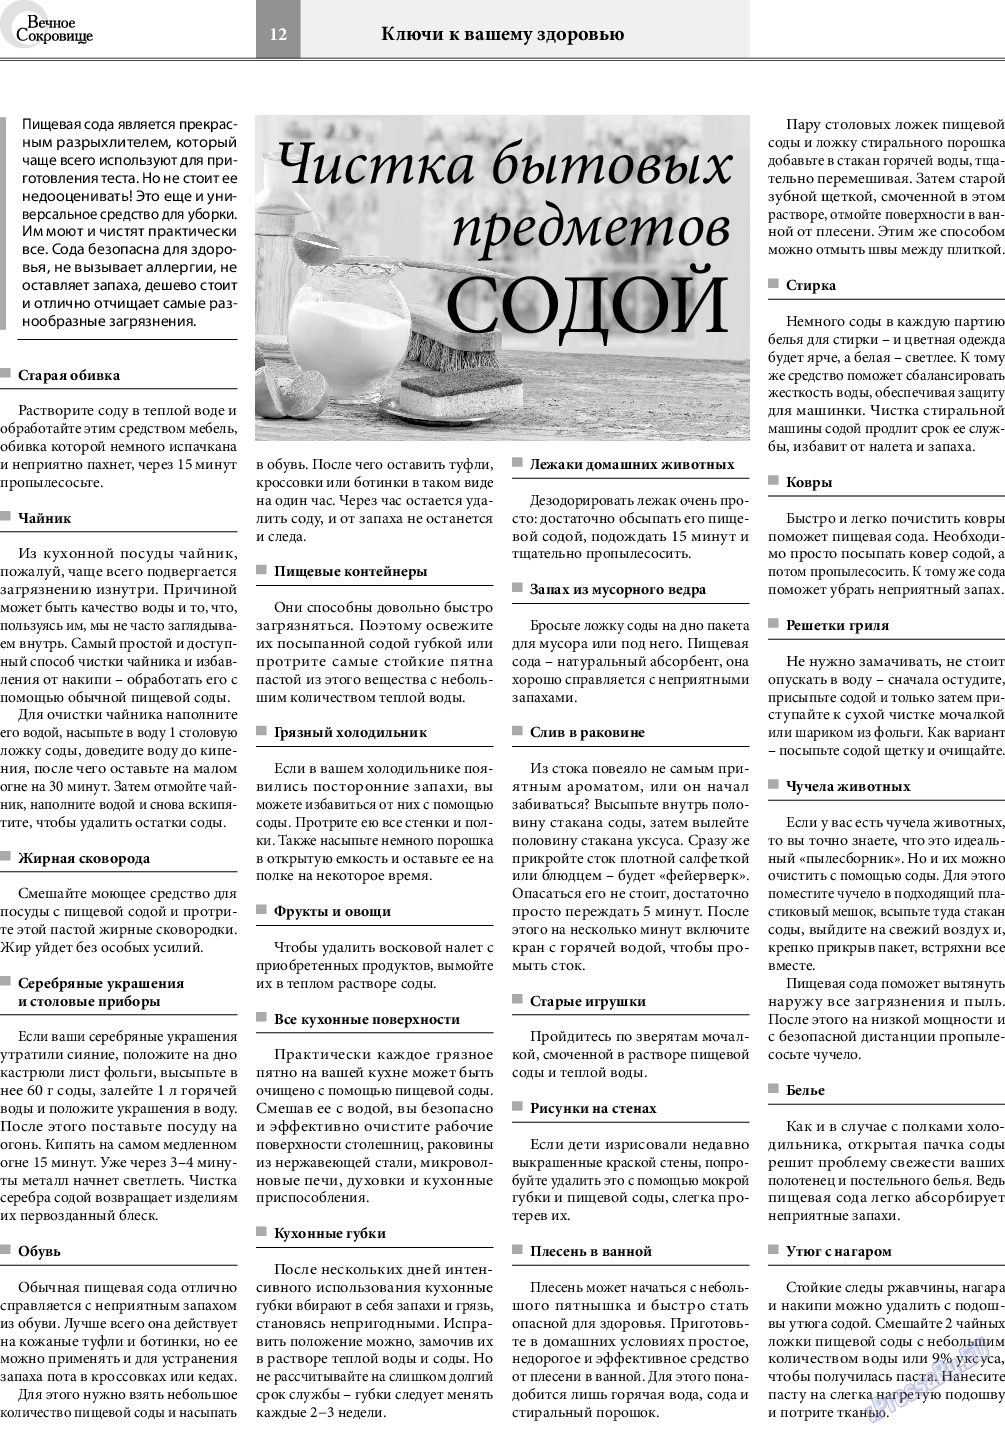 Вечное сокровище, газета. 2020 №6 стр.12